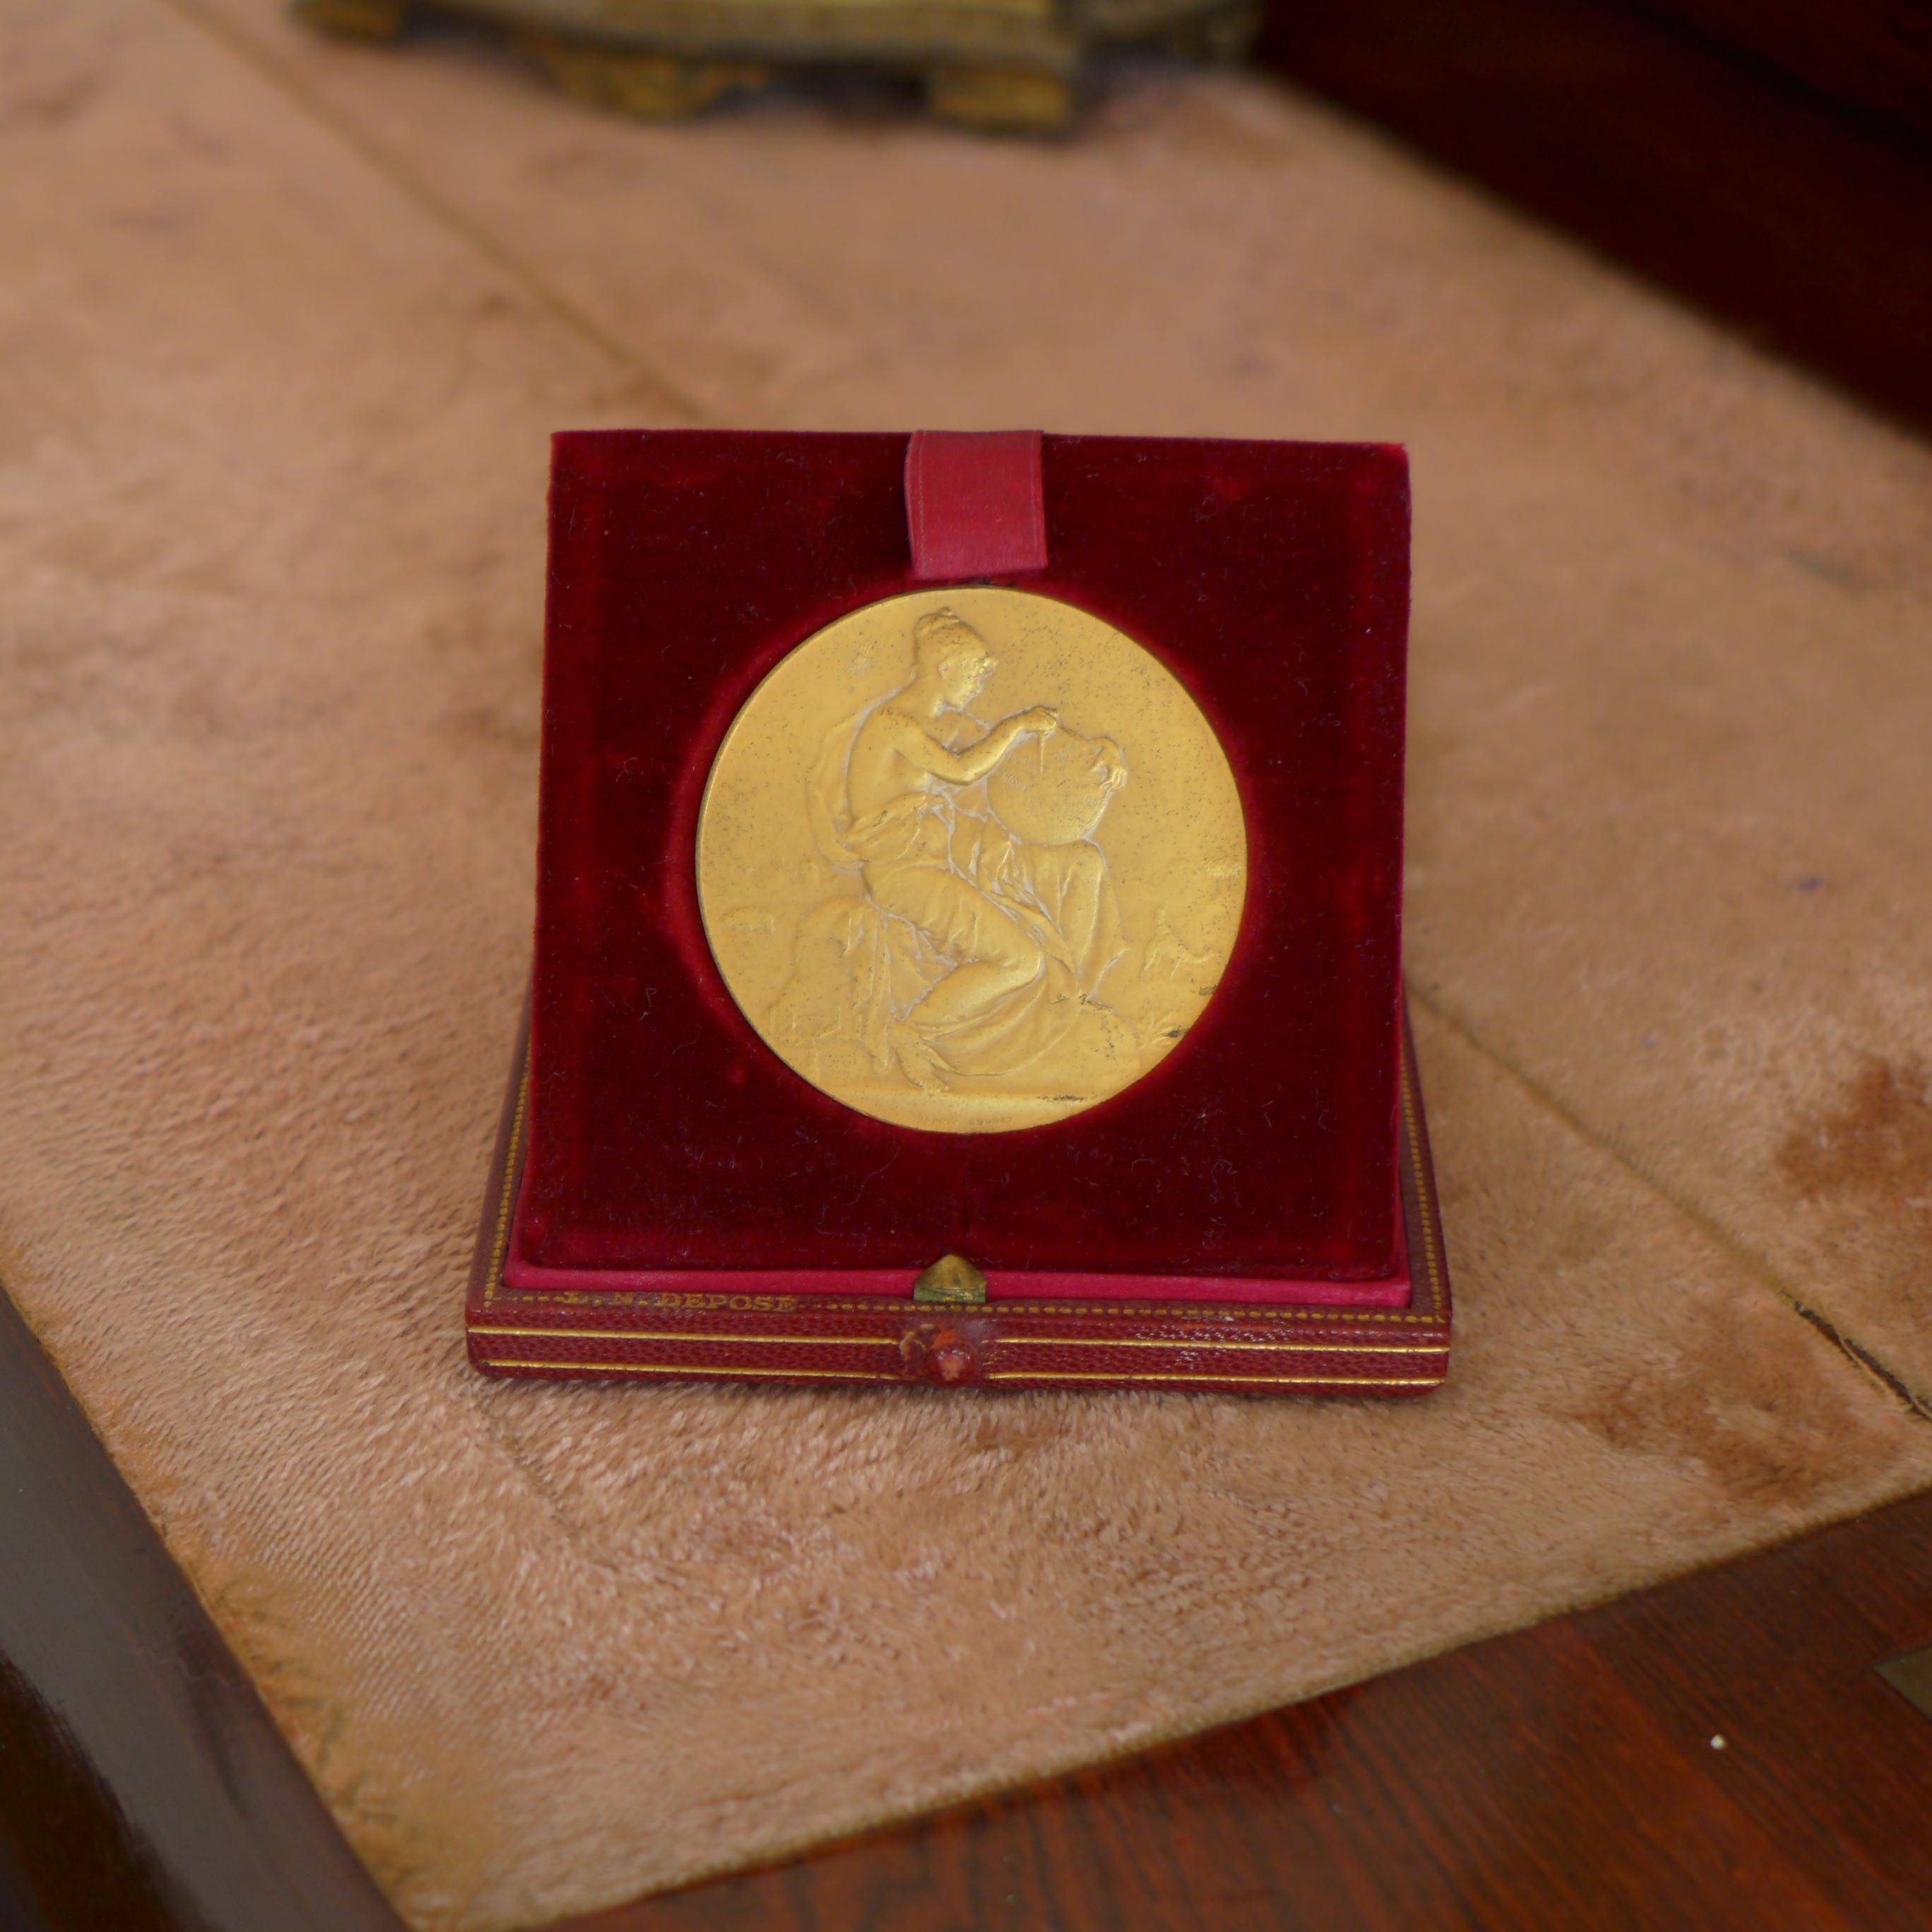 Sports et loisirs numismatique touring club de France médaille d'argent 50mm
Congrès forestier, 1913
Gravé par J. N. Deposé.